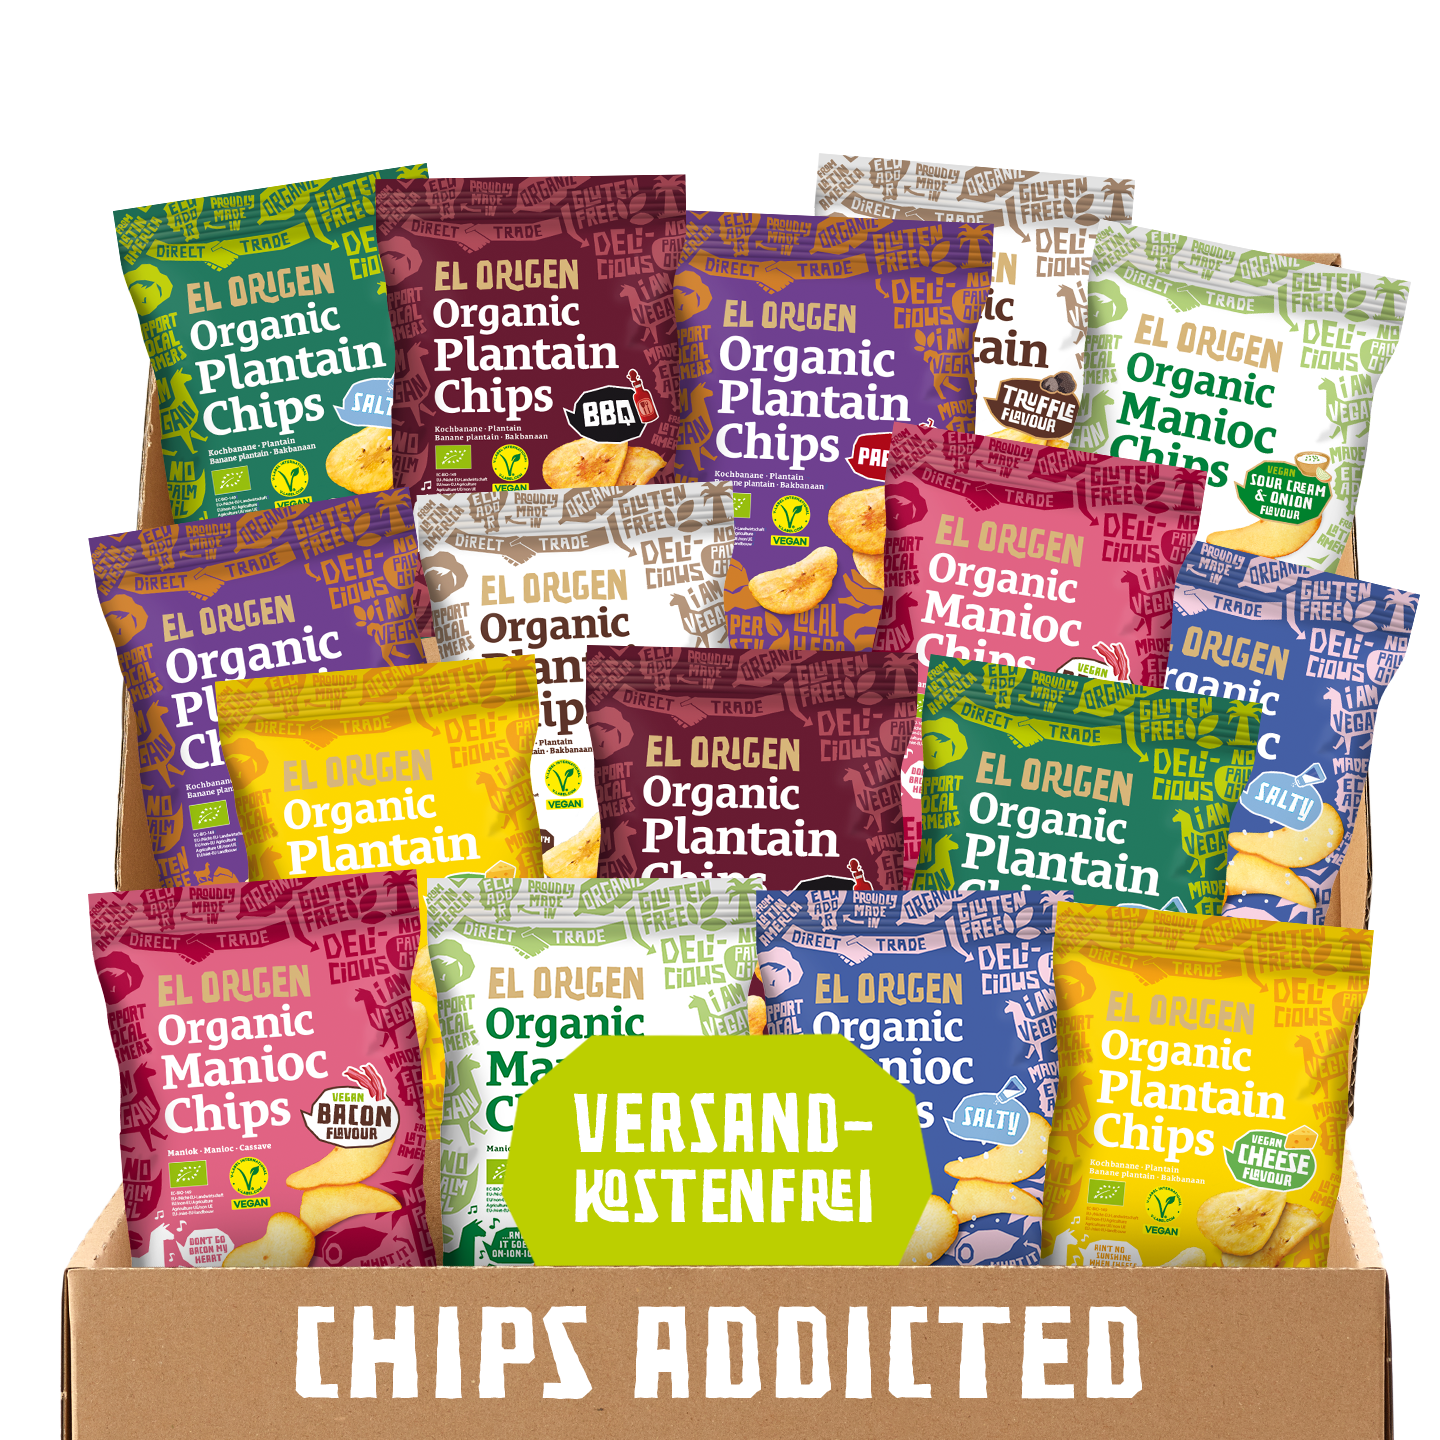 
                  
                    Chips Addicted: Megapaket el origen Bio Chips (16 Packungen)
                  
                